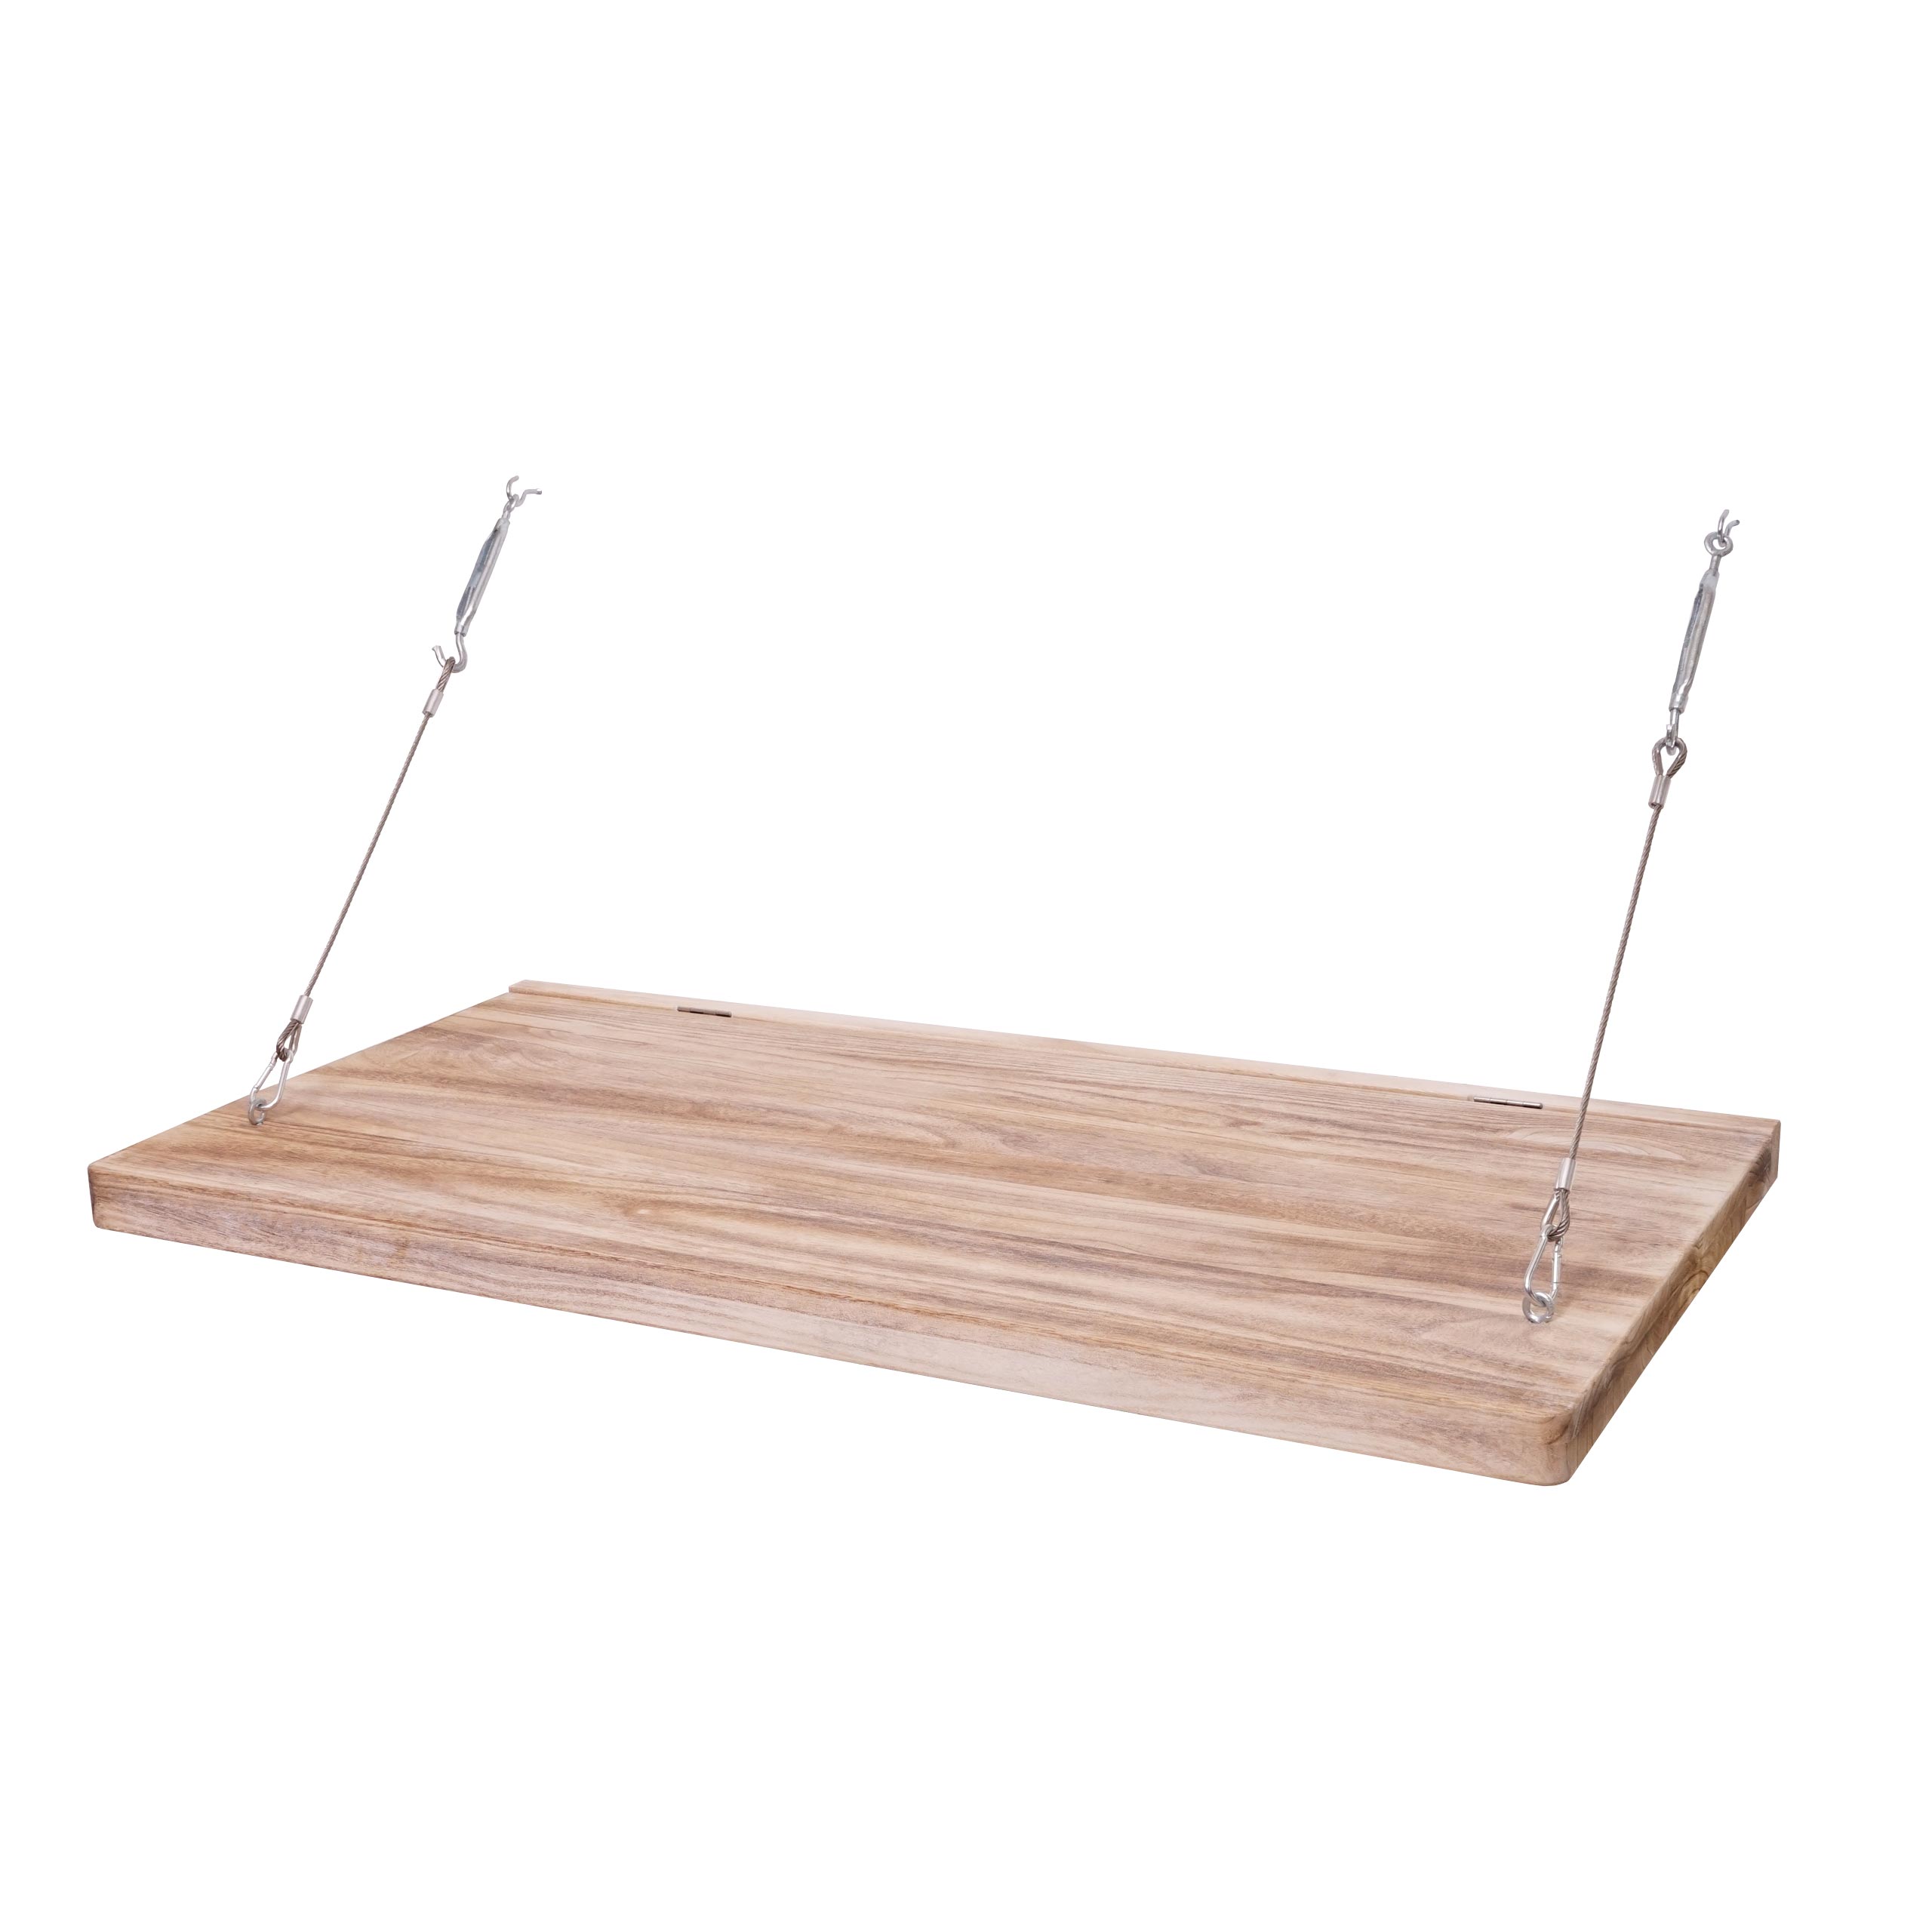 Wandtisch HWC-H48, Wandklapptisch Tisch mit Tafel, klappbar Massiv-Holz |  eBay